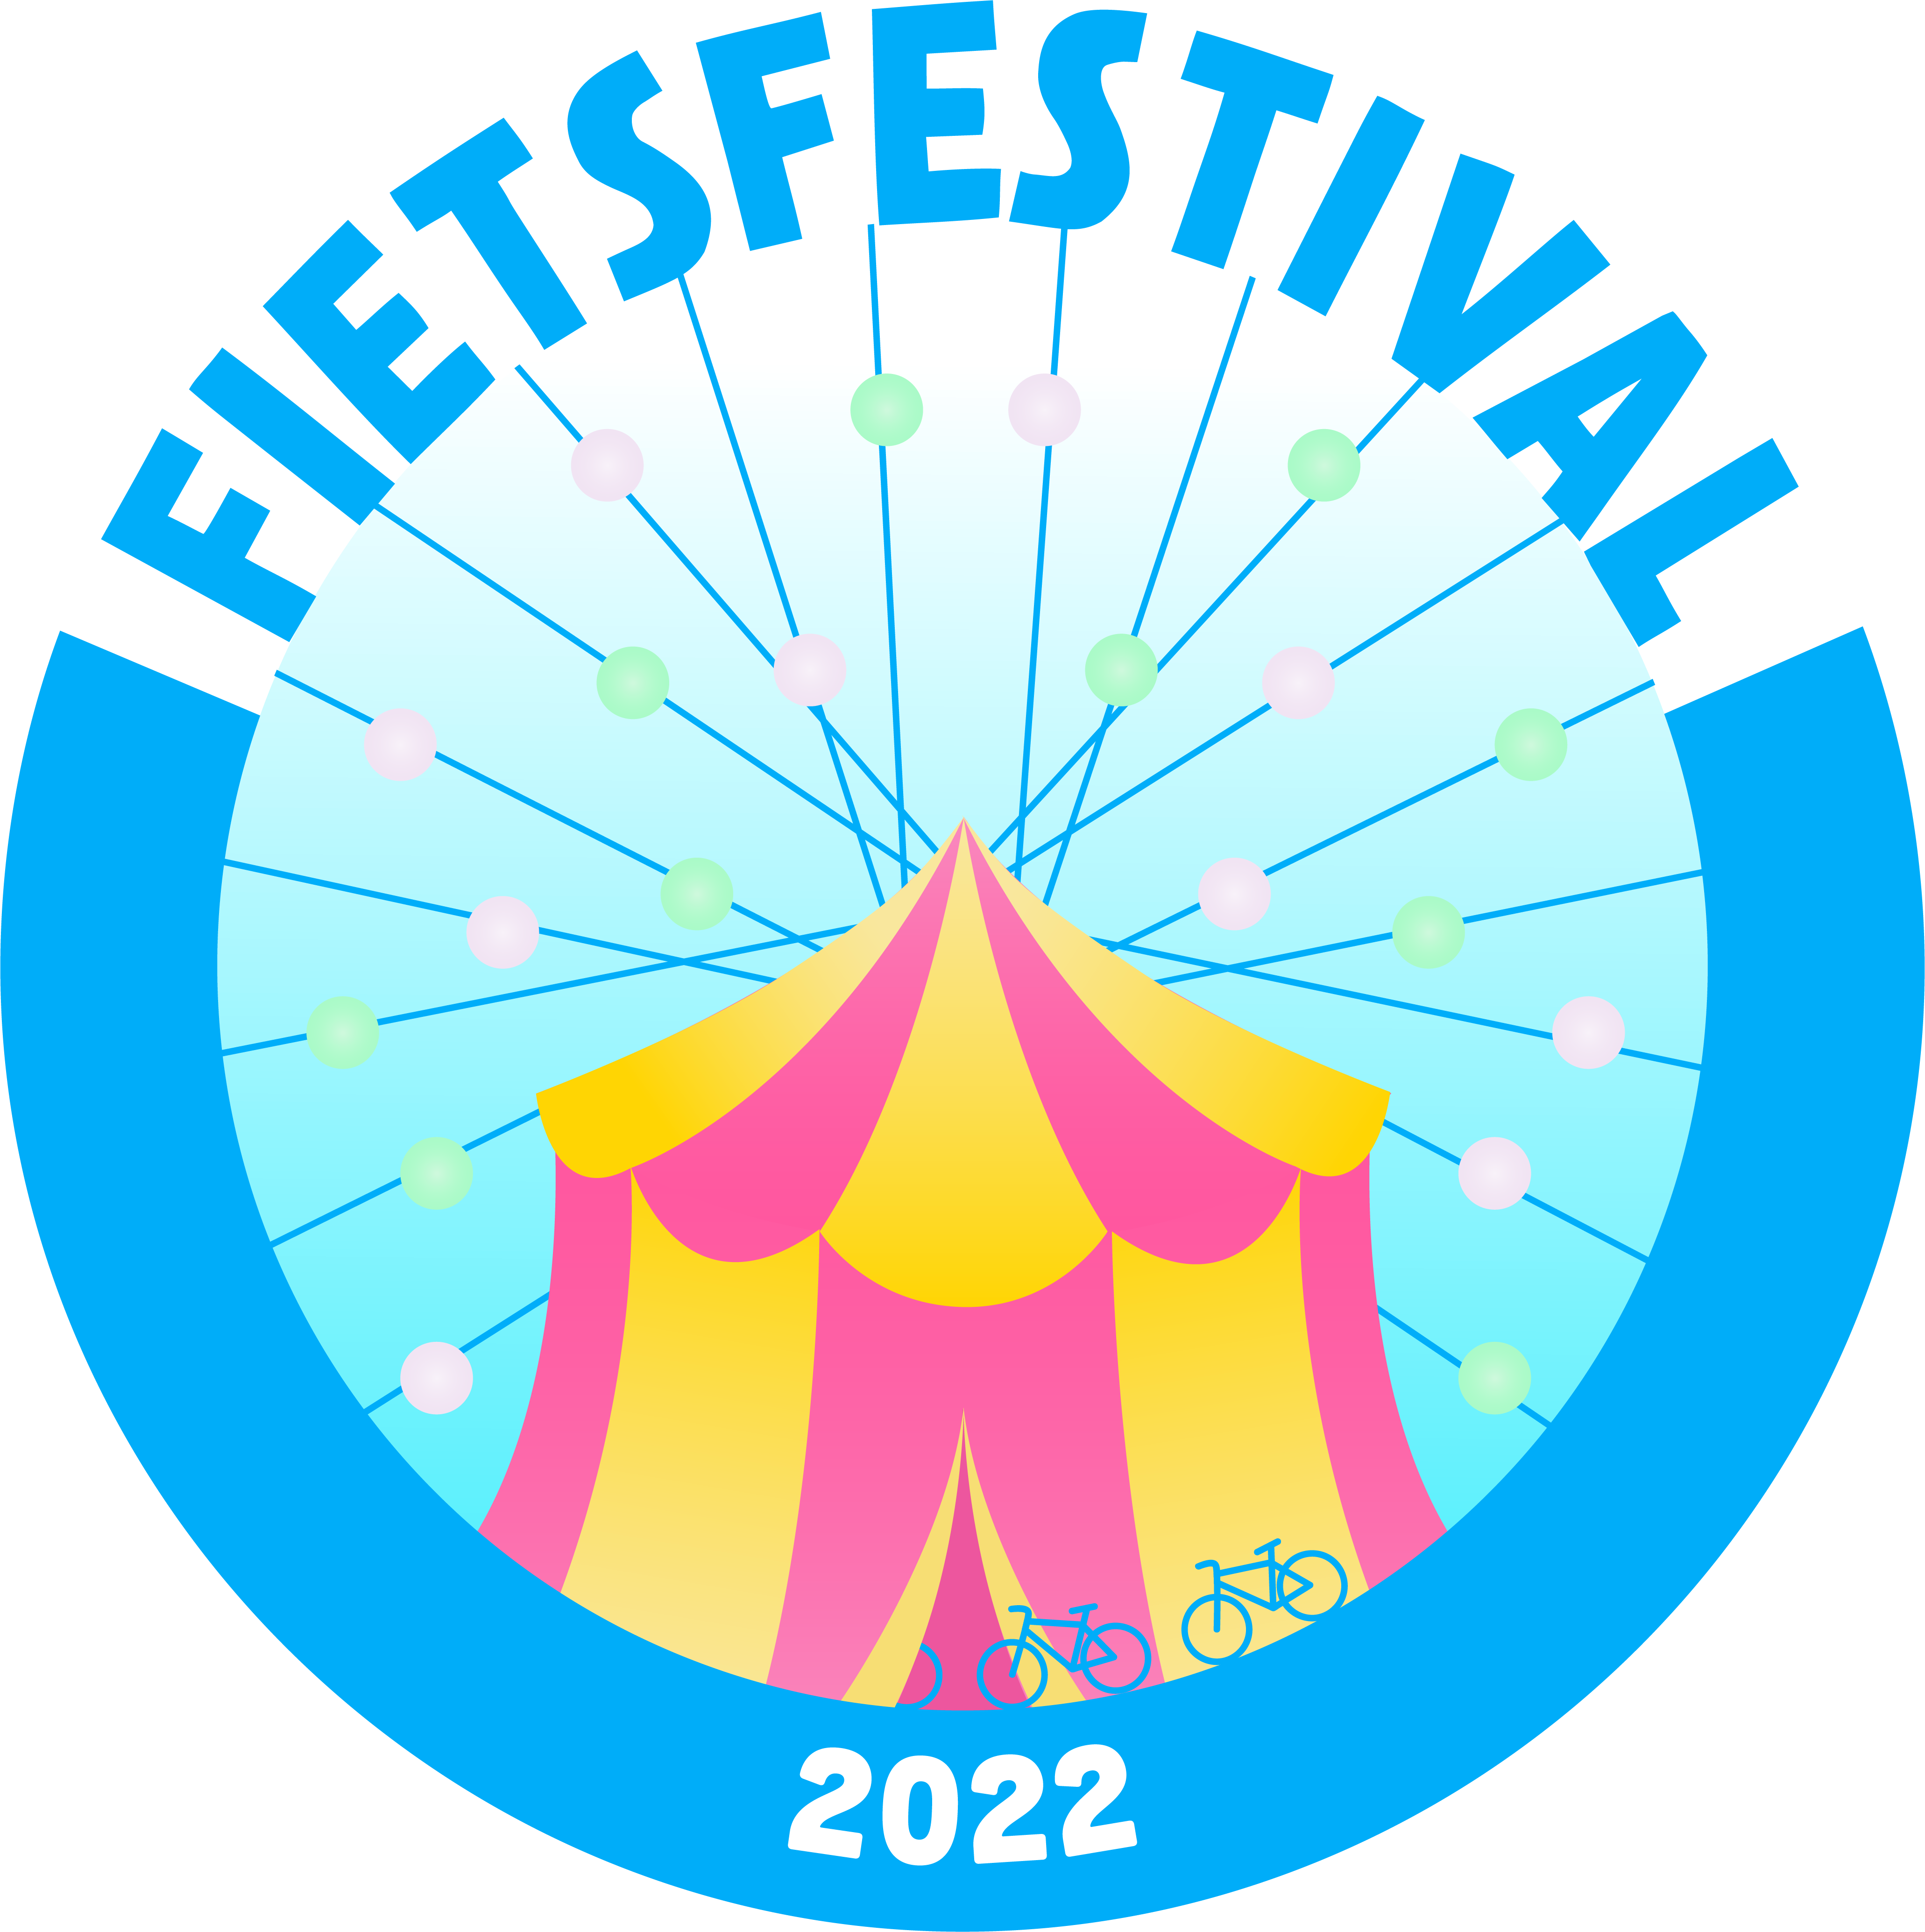 Fietsfestival 2022